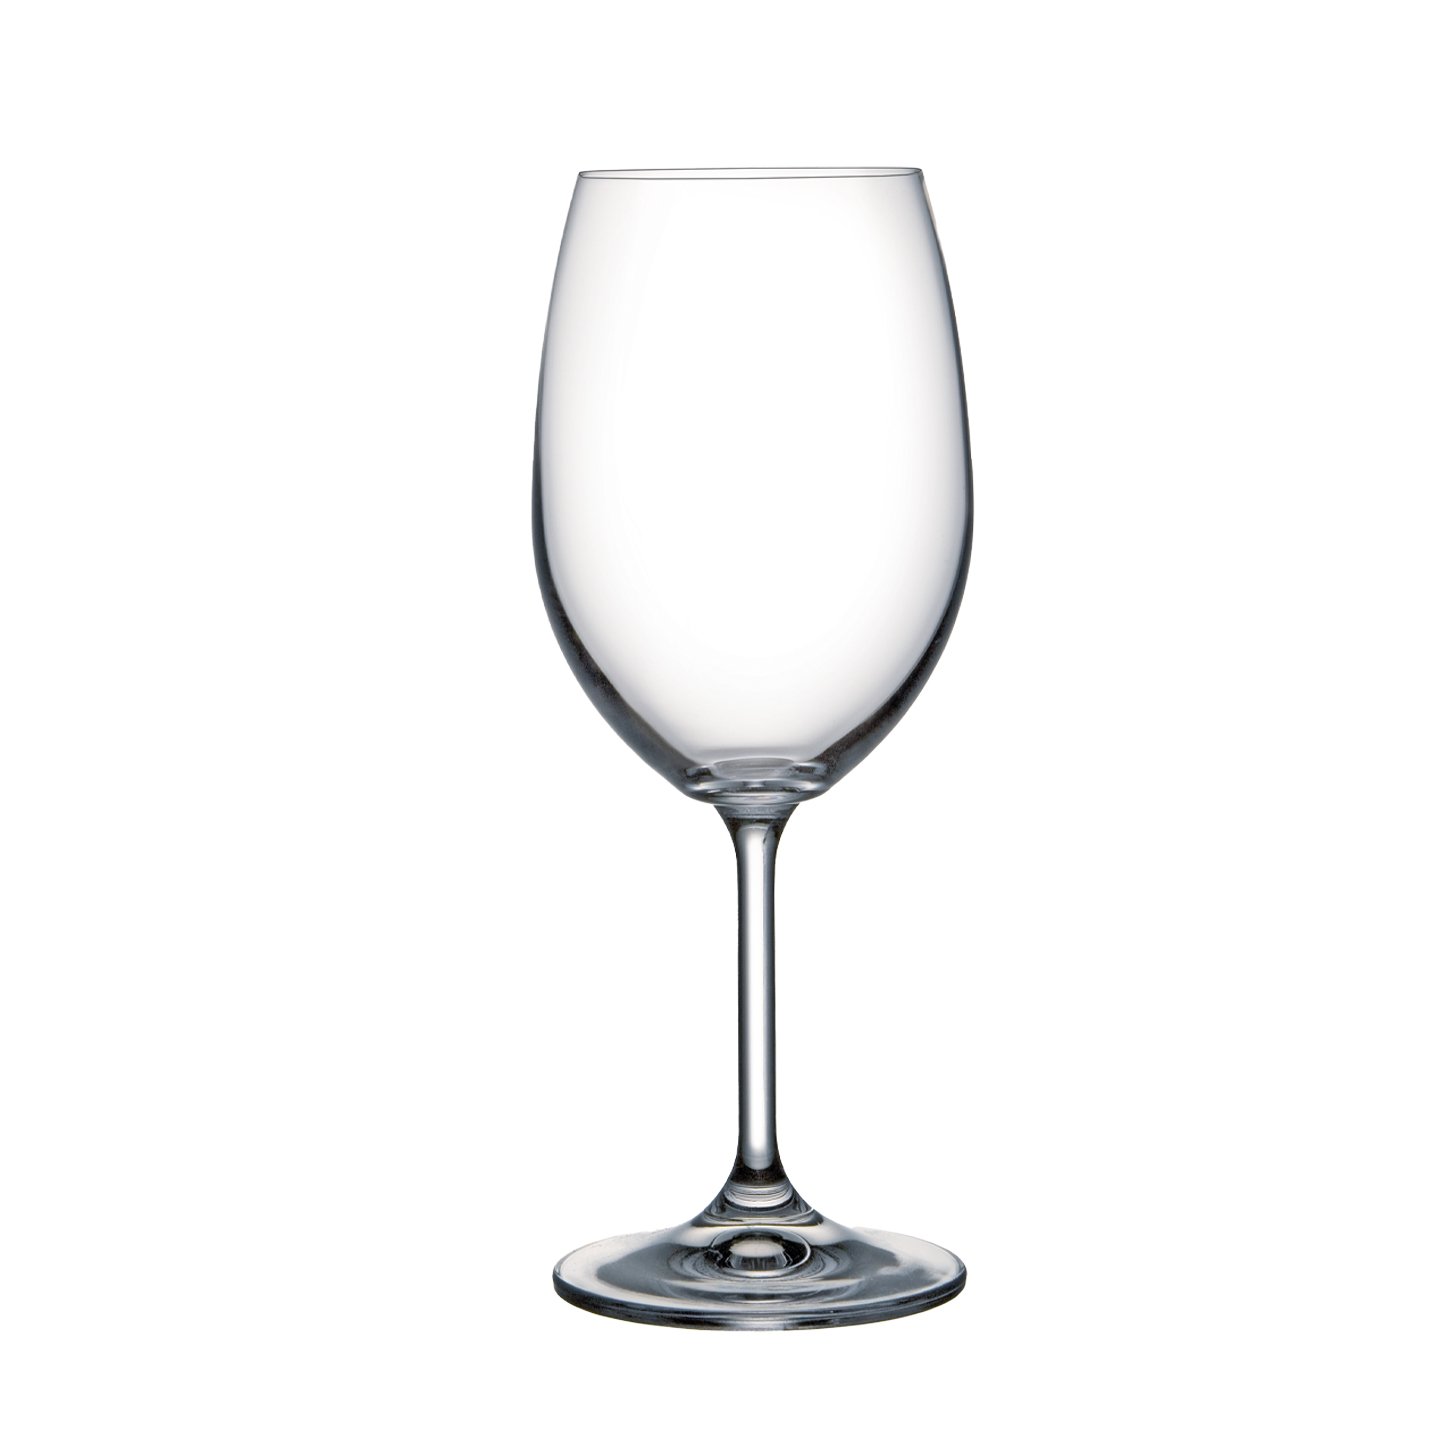 Pahar pentru vin, sticlă cristalină, 350 ml Carrefour